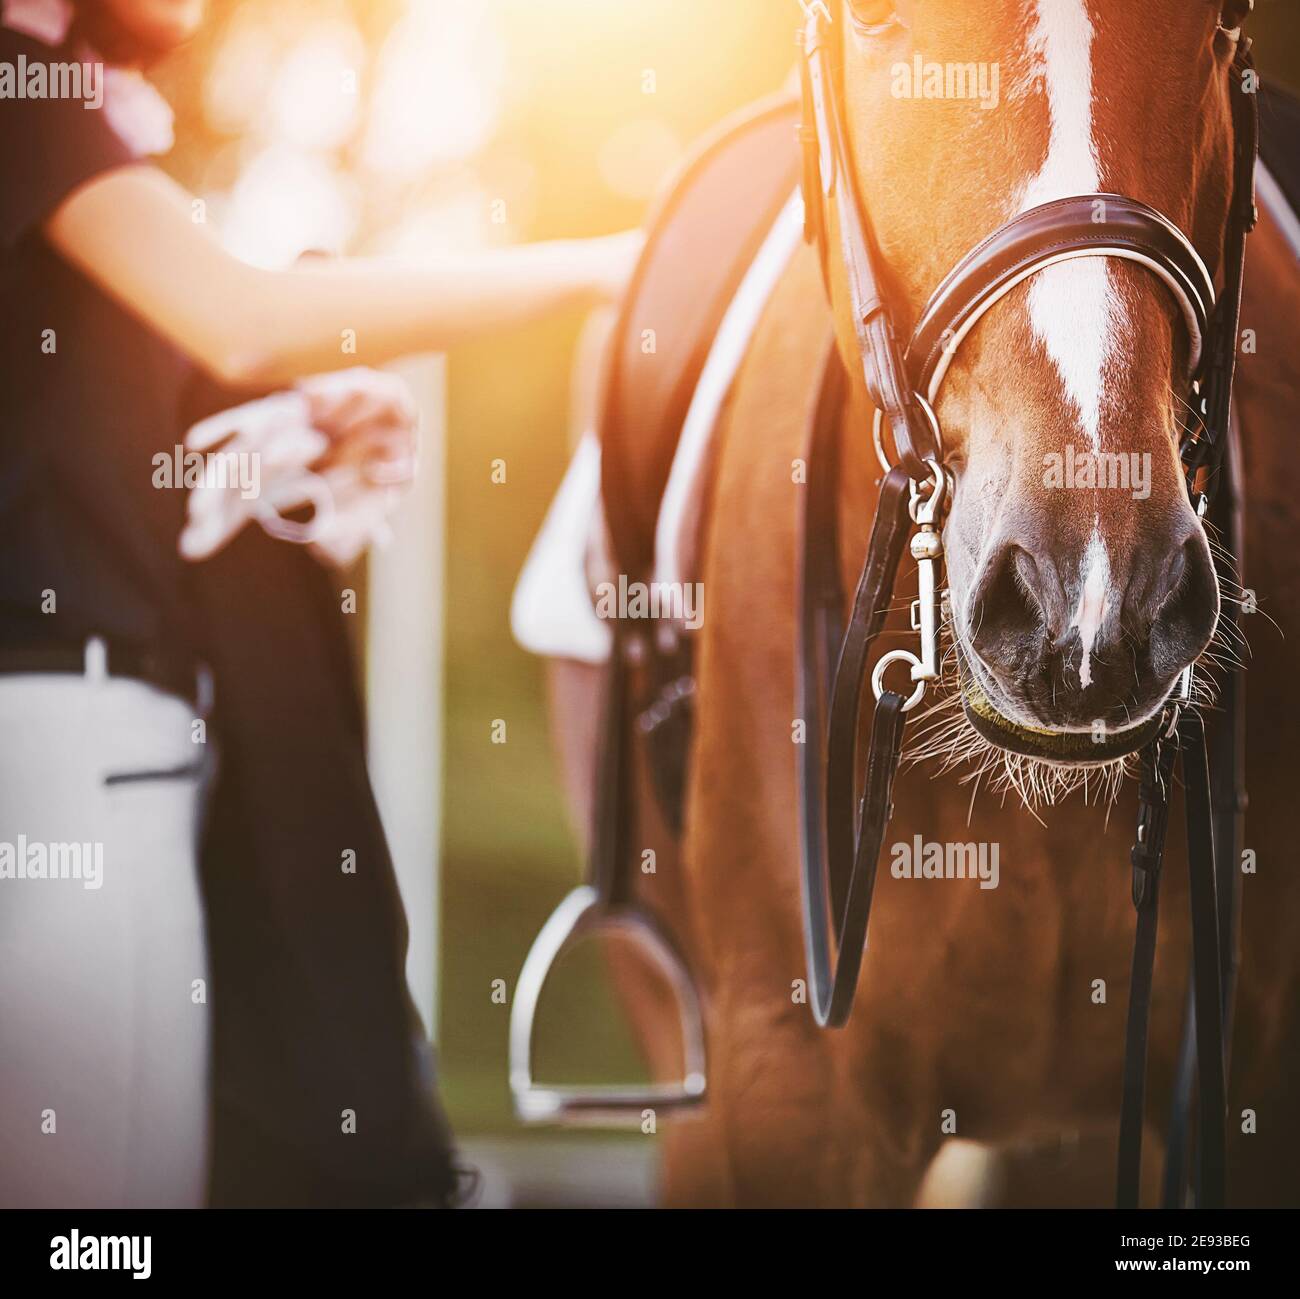 Der Reiter, der Handschuhe in einer Hand hält, passt die Gurte auf dem Sattel eines schönen Sauerampfpferdes an, das an einem Sommertag von der warmen Sonne beleuchtet wird. Stockfoto